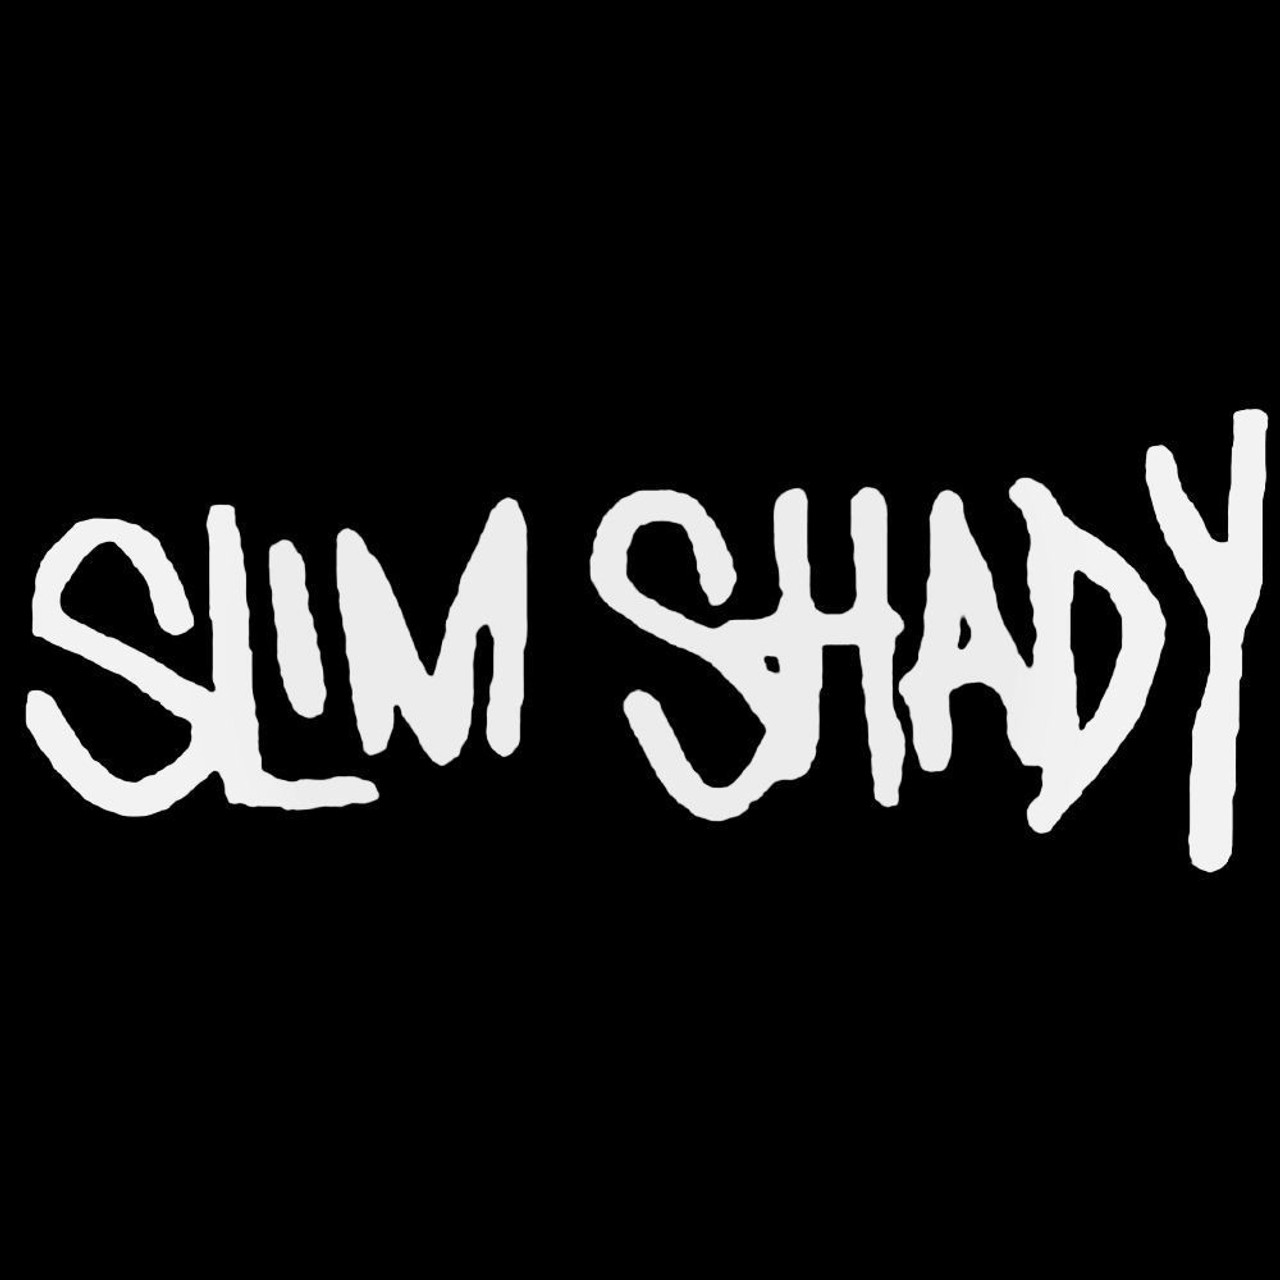 Slim Shady Car Decal Sticker